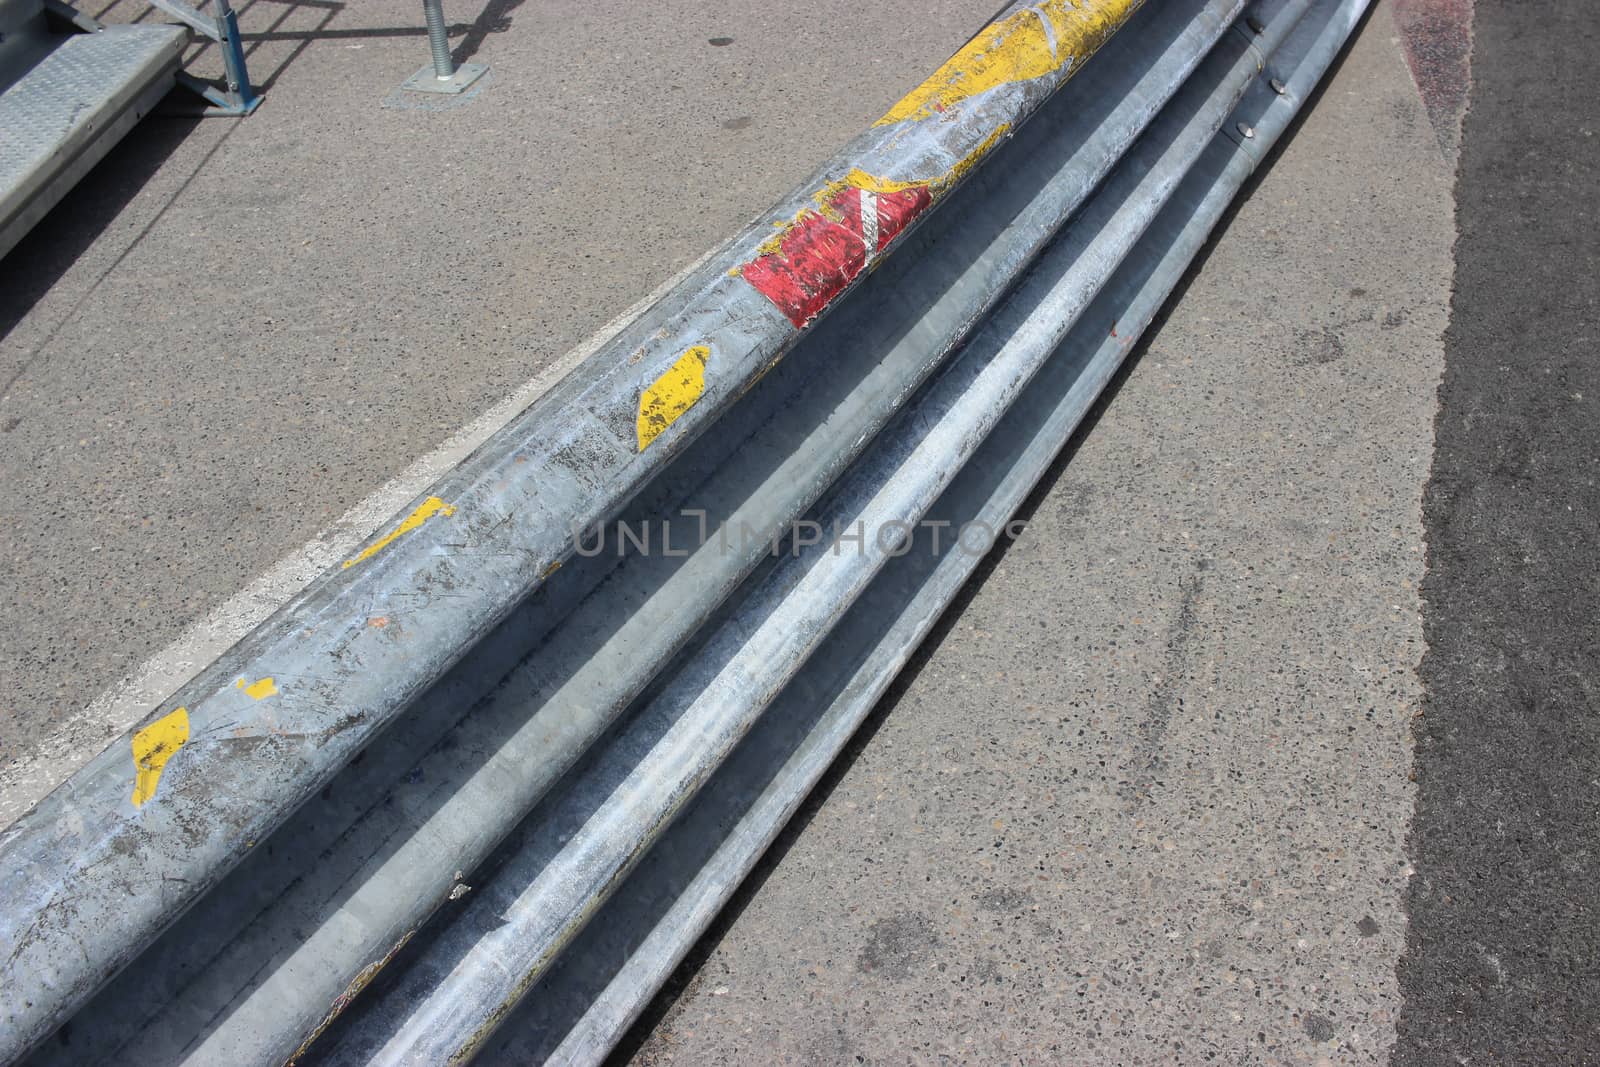 Monaco Grand Prix 2016 - Safety Barrier Fence Racing on Asphalt Road
